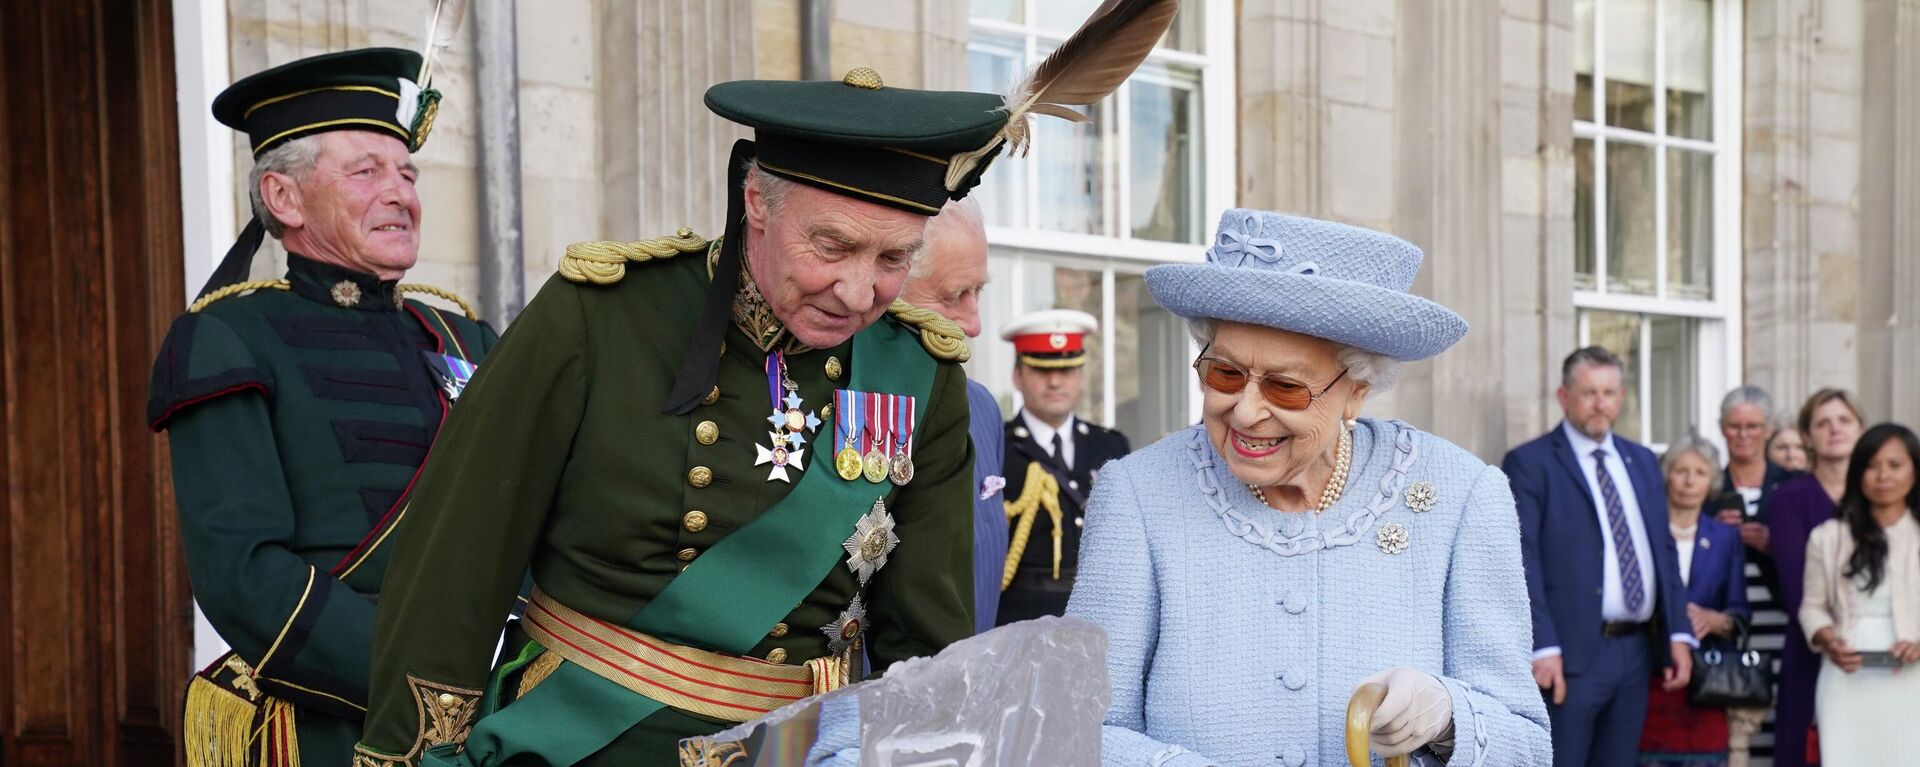 La reina Isabel II de Reino Unido fue reportada en estado delicado de salud por el Palacio de Buckingham. - Sputnik Mundo, 1920, 08.09.2022